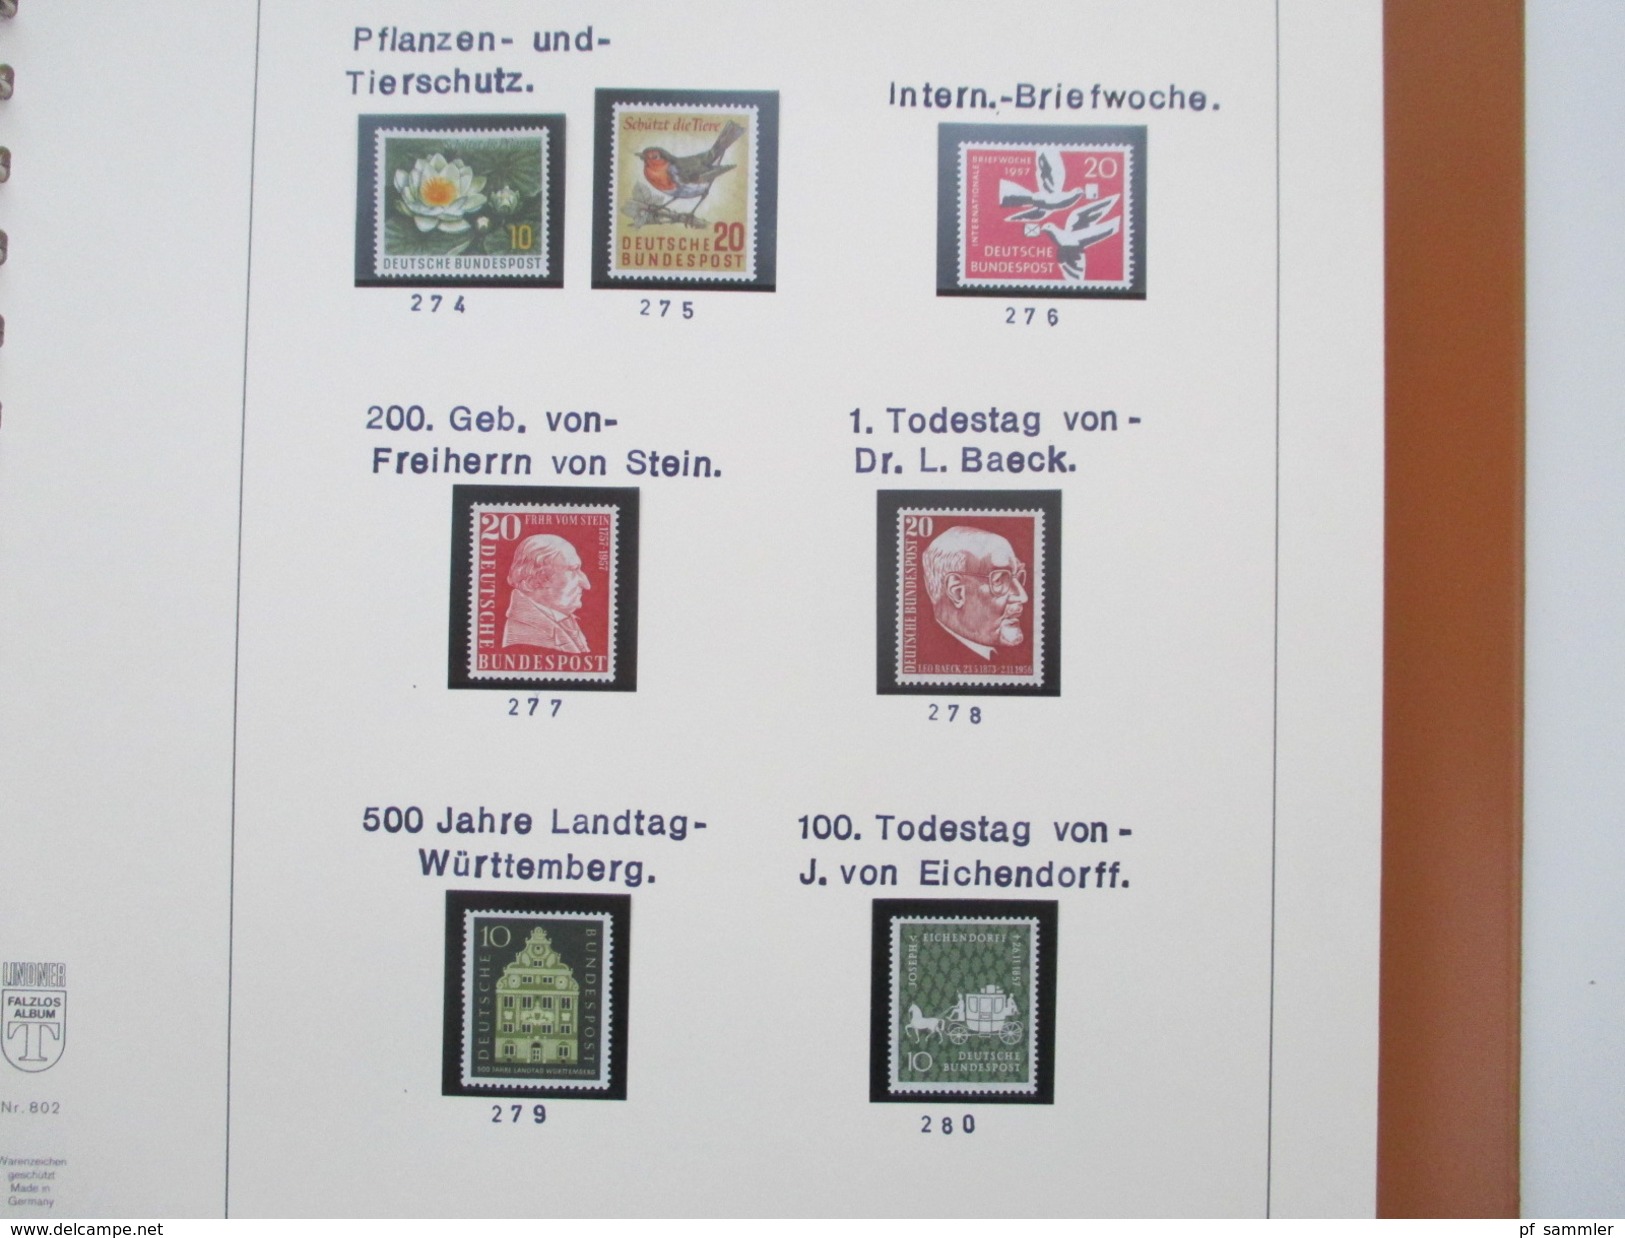 Bund Stöberposten Sammlungen / Teilslg. in 6 Vordruck Alben. Viel ** ab den 1950er Jahren! Hoher Katalogwert!!